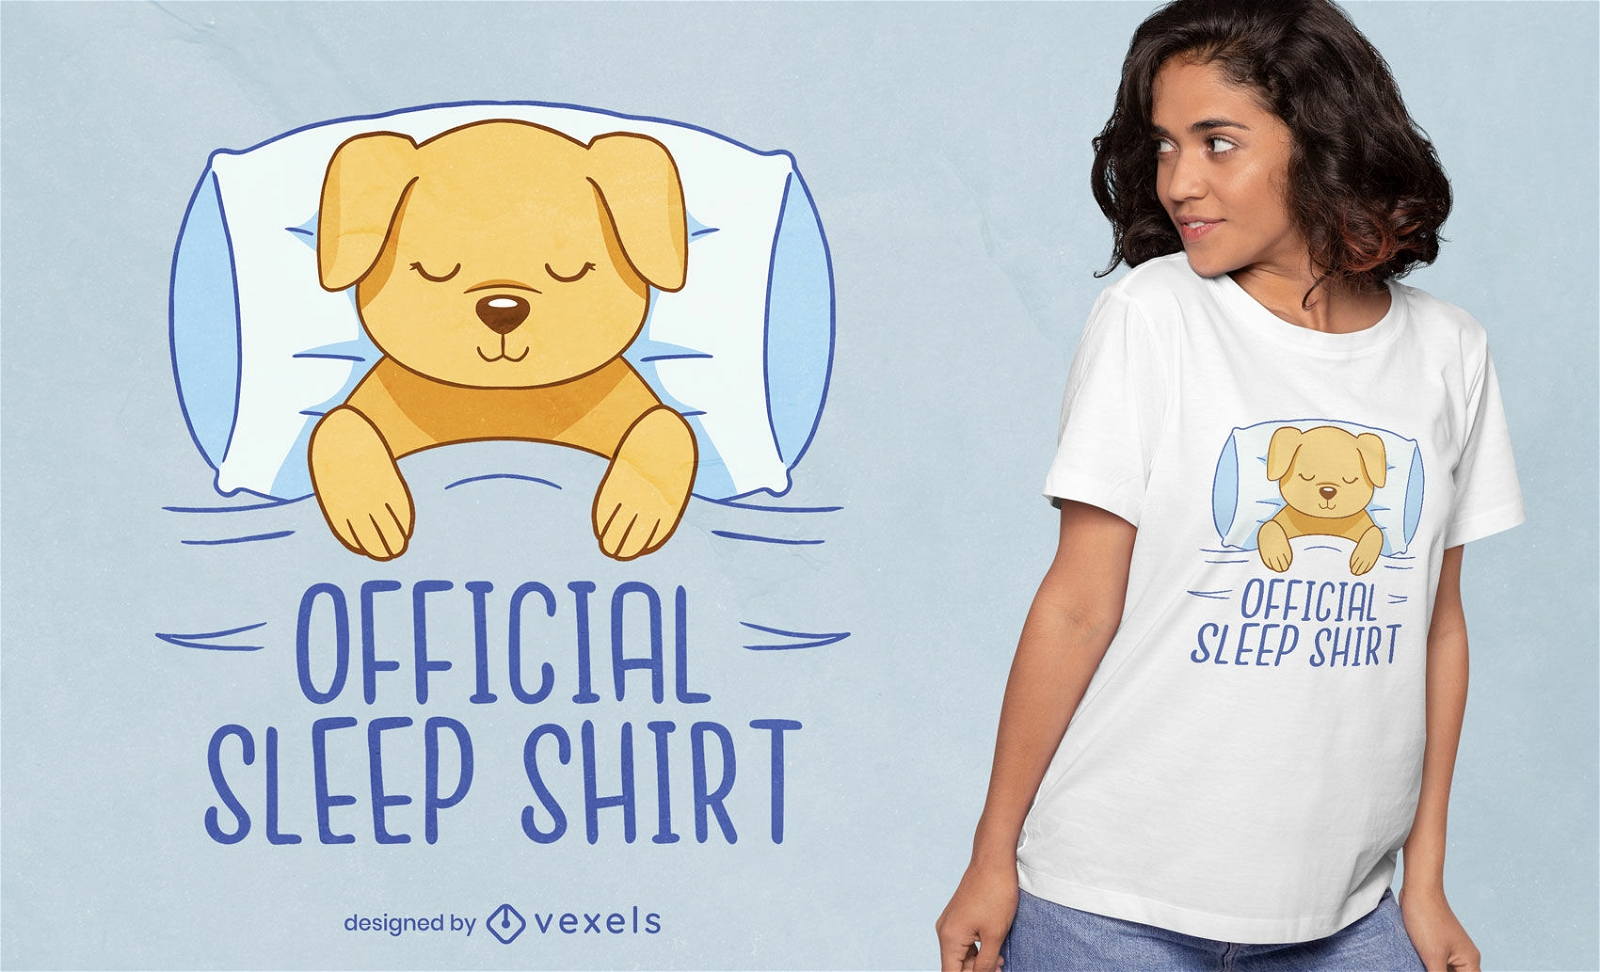 Diseño oficial de camiseta para perro con camisa de dormir.